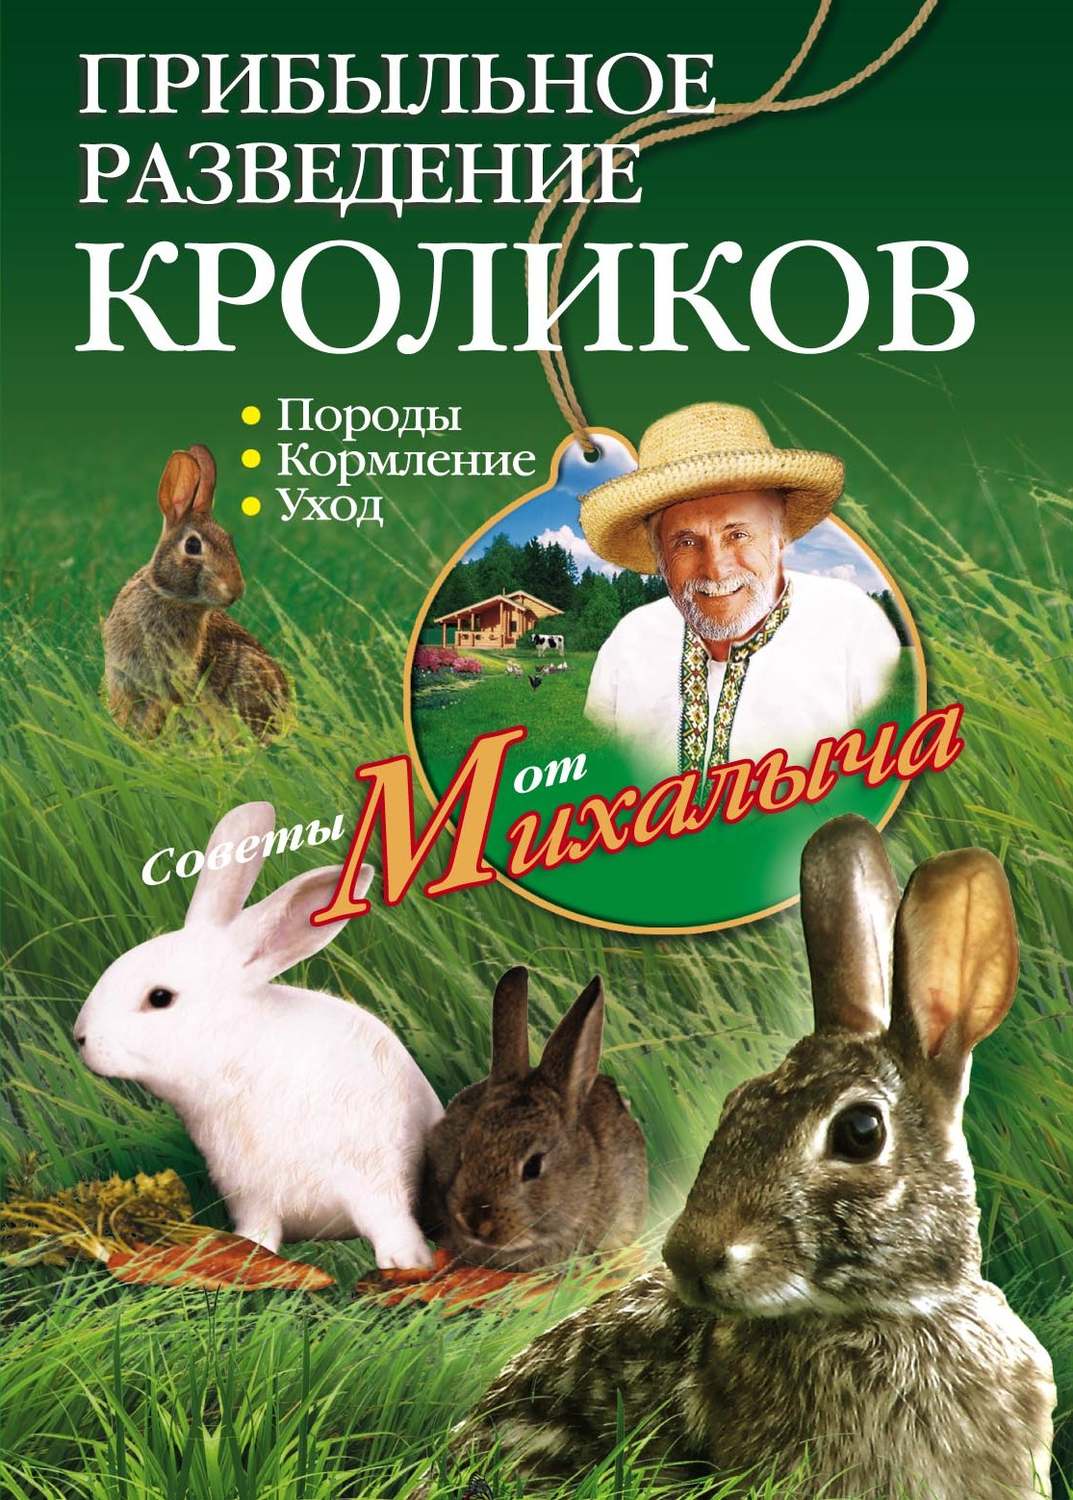 Скачать книгу про кролиководство